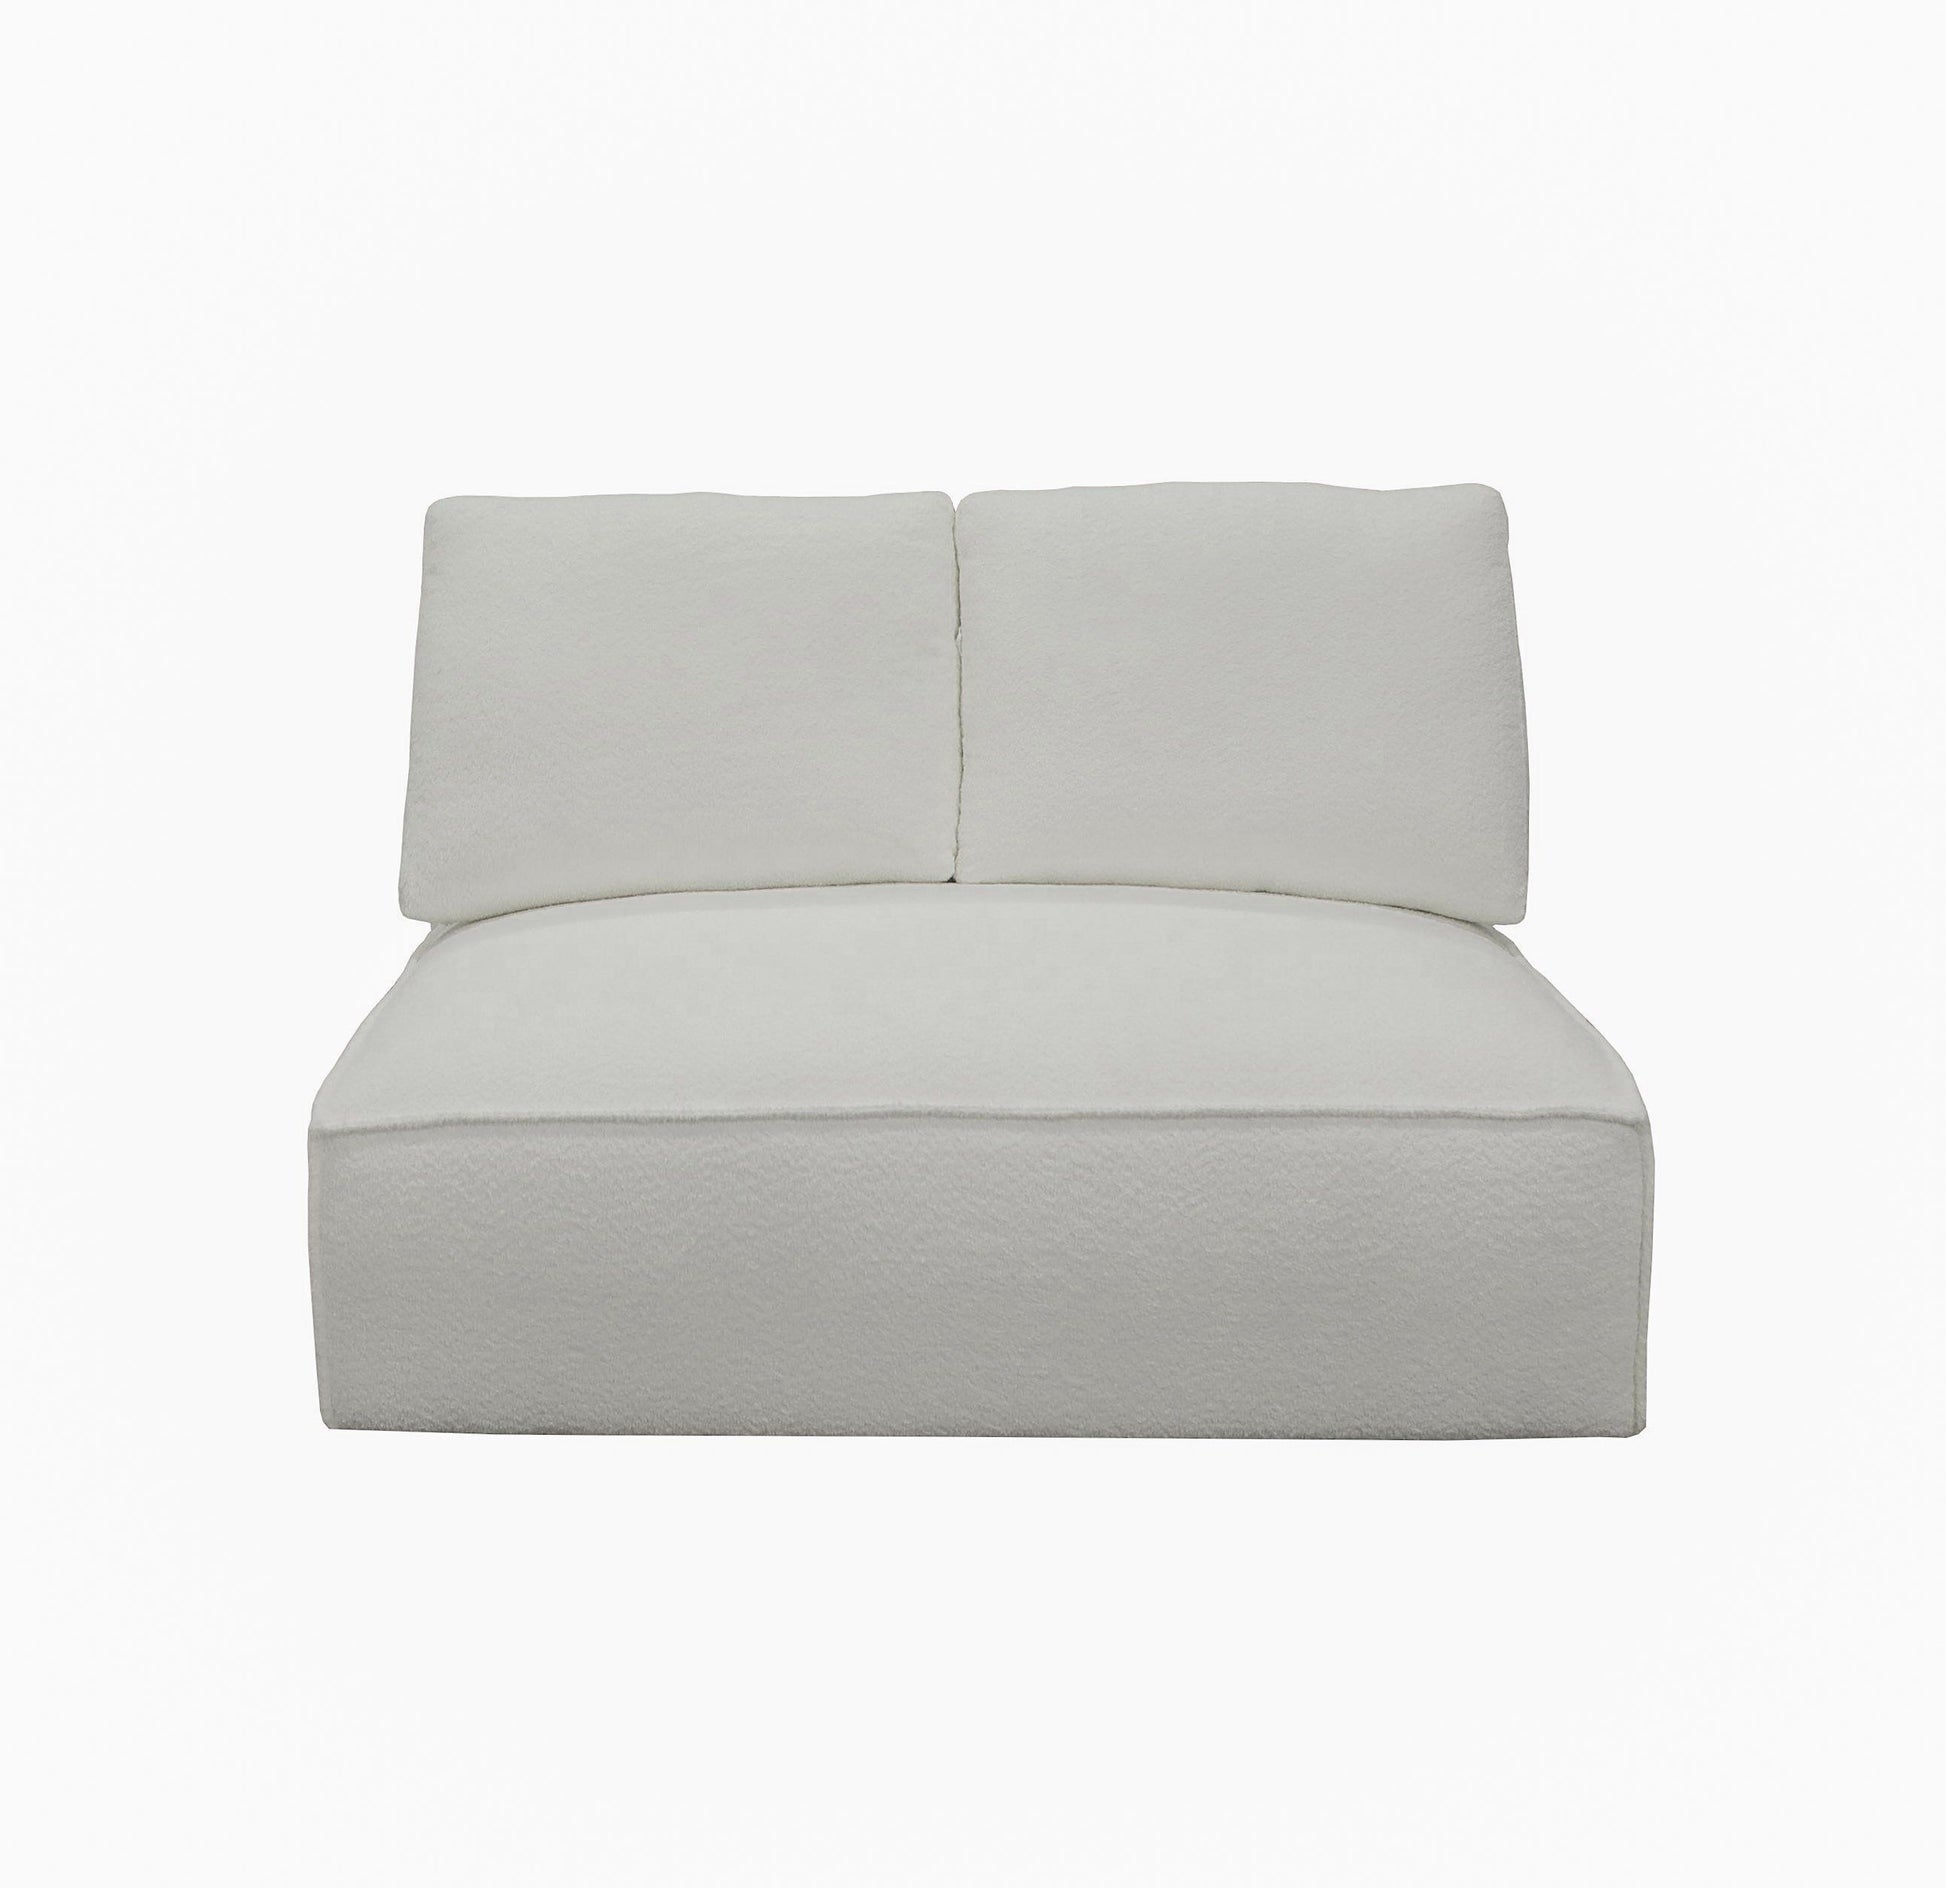 Divani Casa Lulu Modern White Fabric Modular Sectional Sofa 5